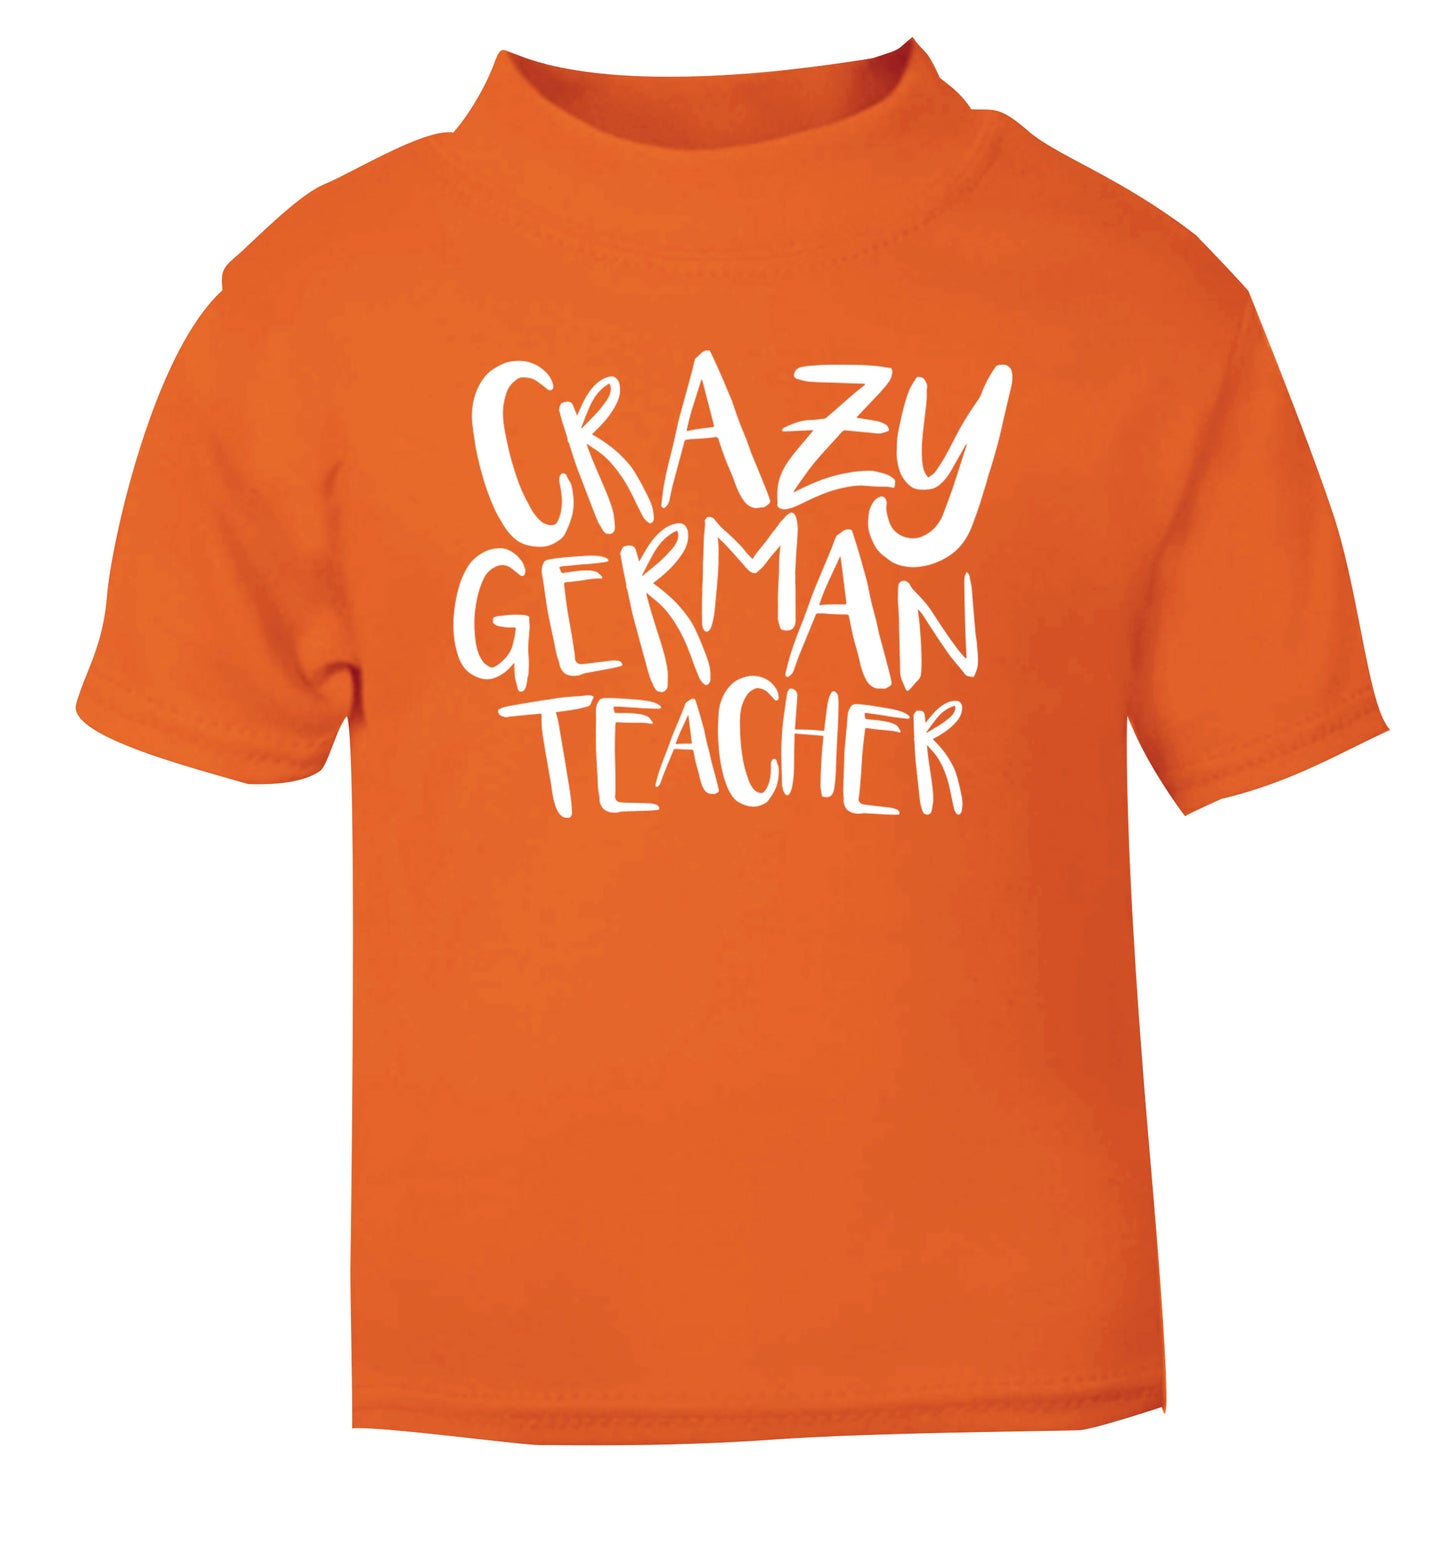 Crazy german teacher orange Baby Toddler Tshirt 2 Years